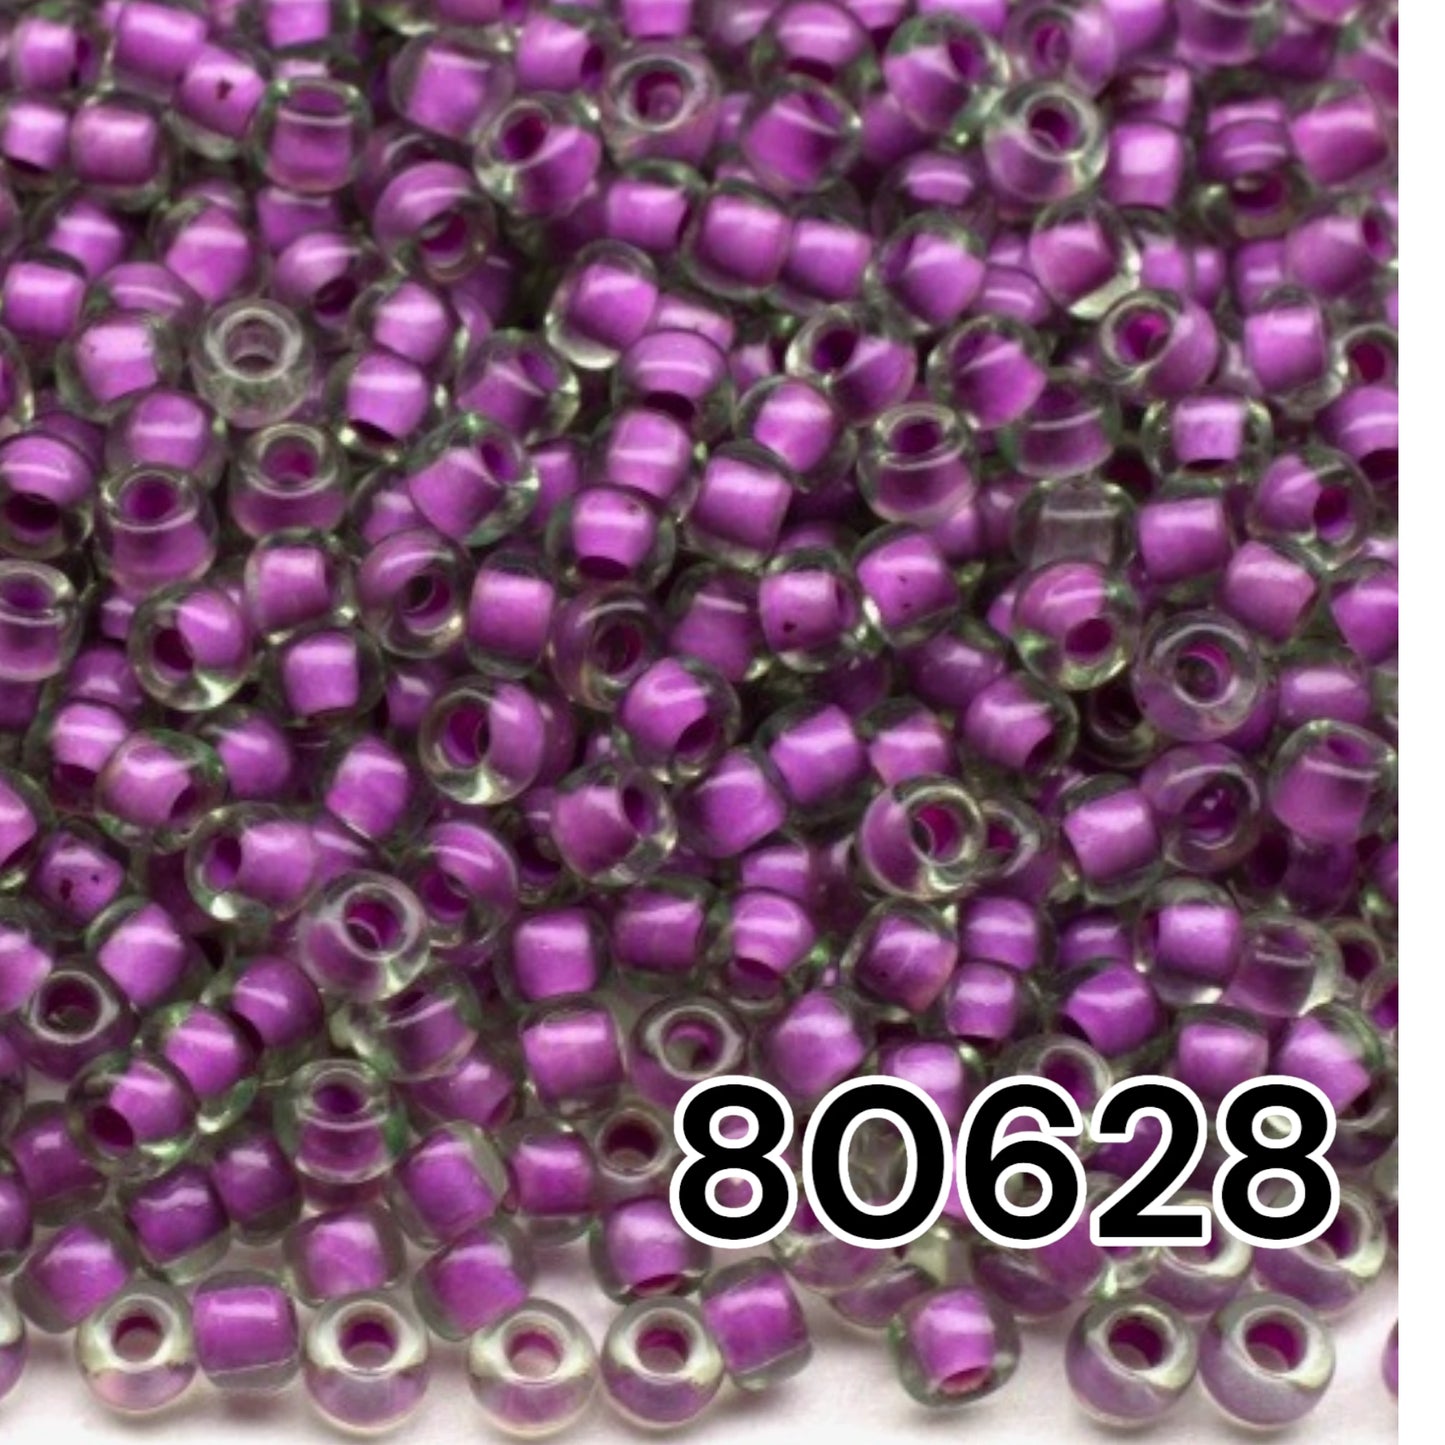 10/0 80628 Preciosa Rocailles-Perlen. Mit Kristallterra-Farbe gefüttert.